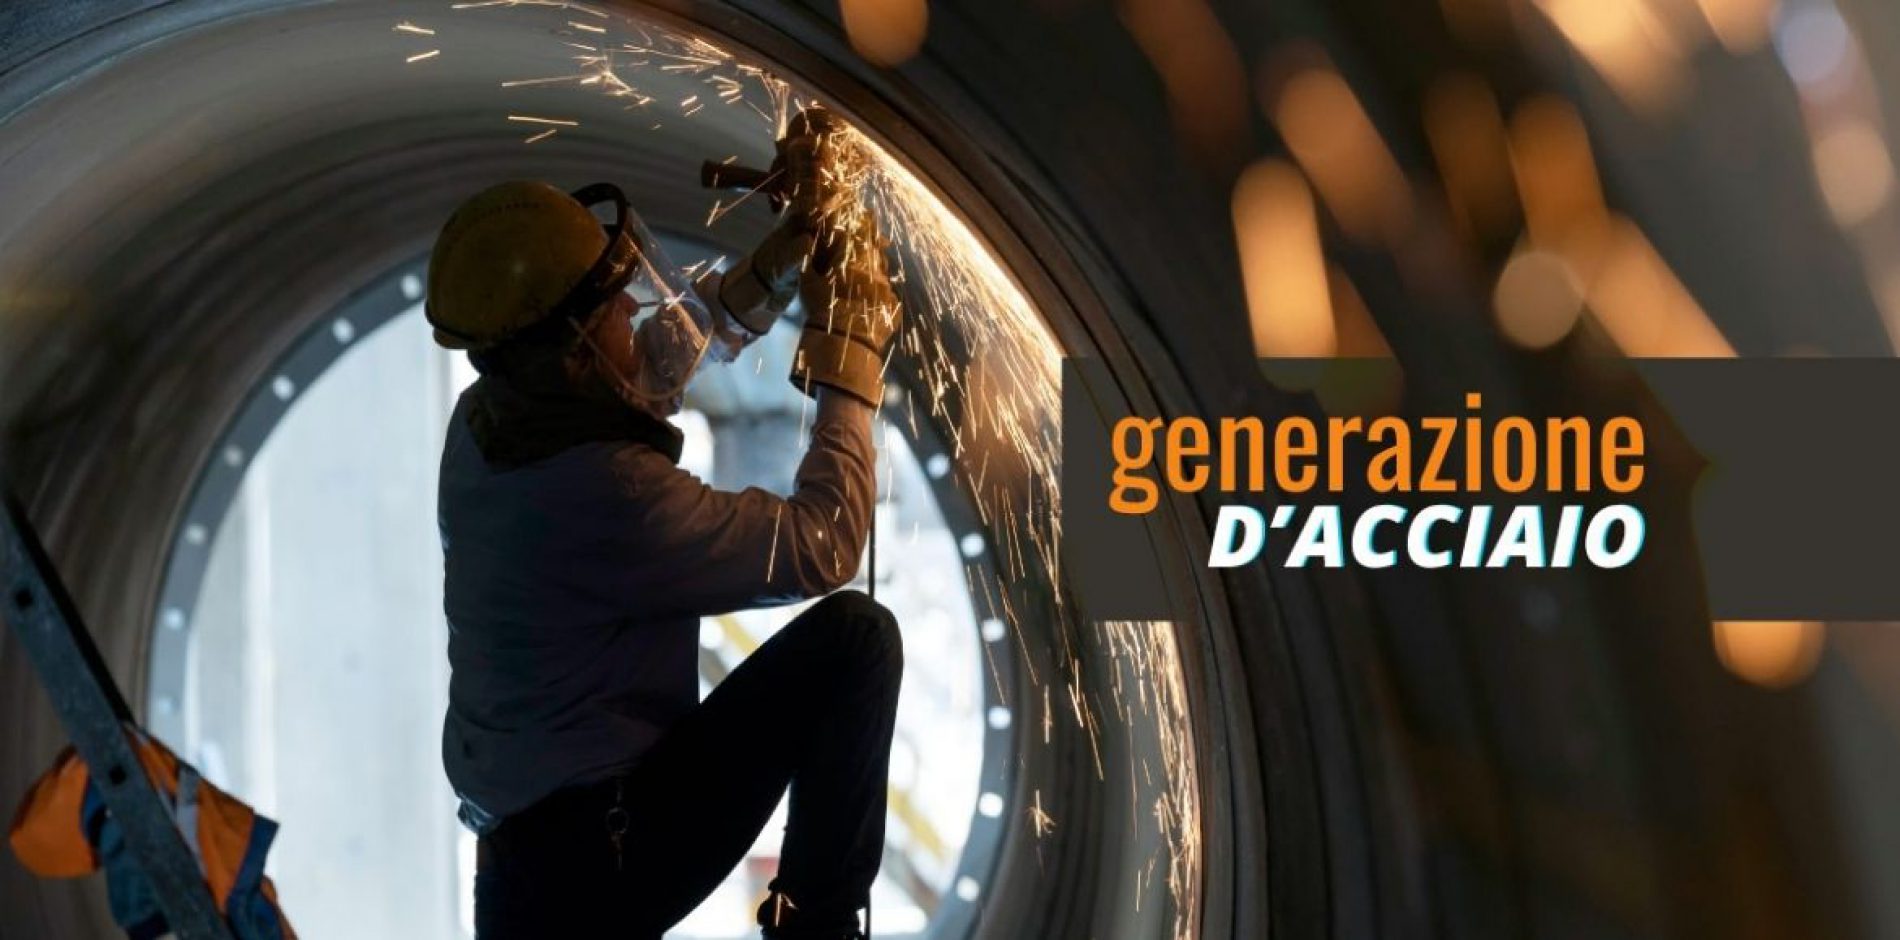 Generazione D’Acciaio – Riparte il progetto che unisce formazione gratuita e inserimento immediato